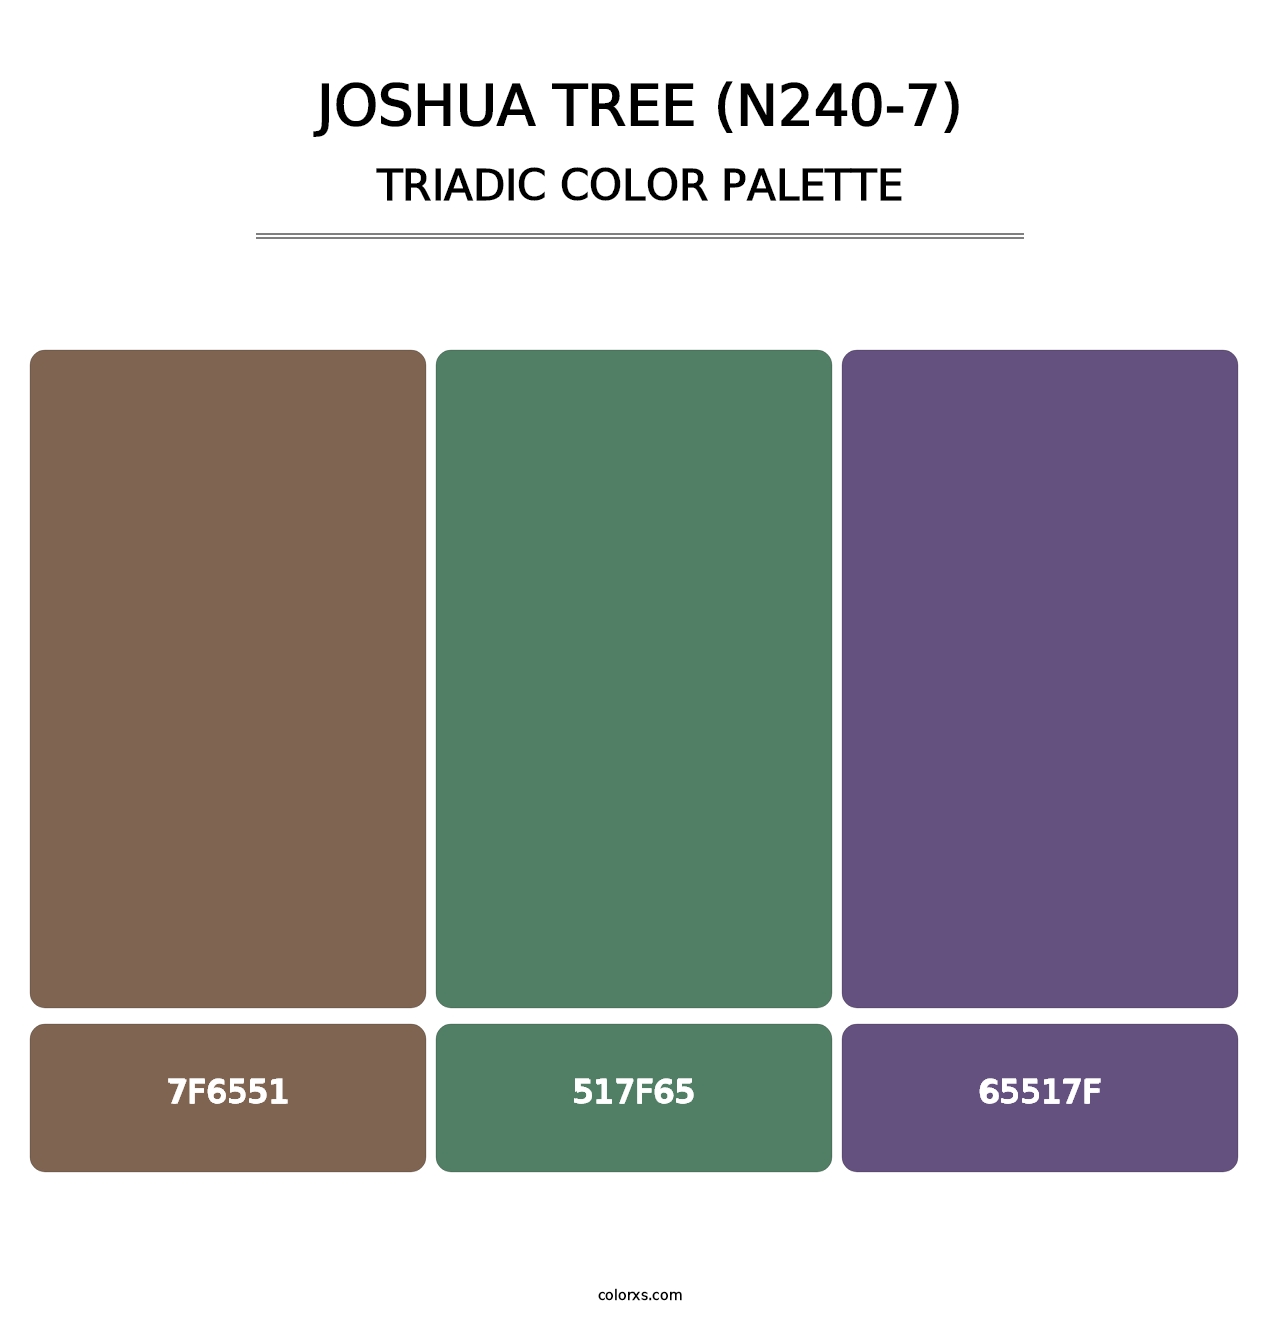 Joshua Tree (N240-7) - Triadic Color Palette